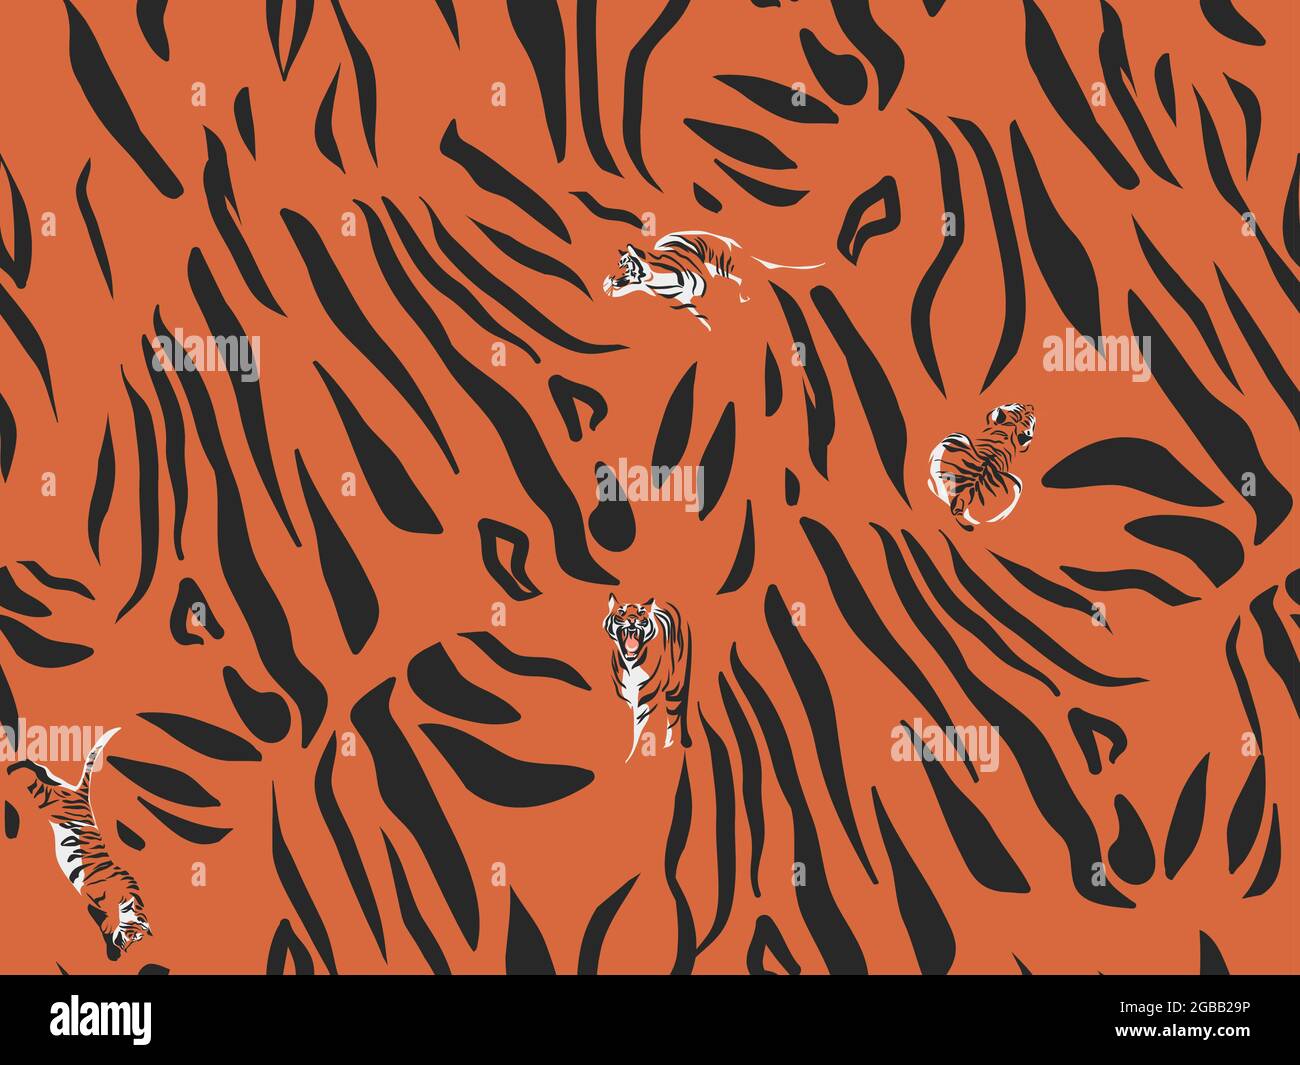 Dessin à la main vecteur résumé stock illustrations graphiques modernes, safari bohème contemporain sans couture motif imprimé avec animal tigre à la texture rayée dedans Illustration de Vecteur